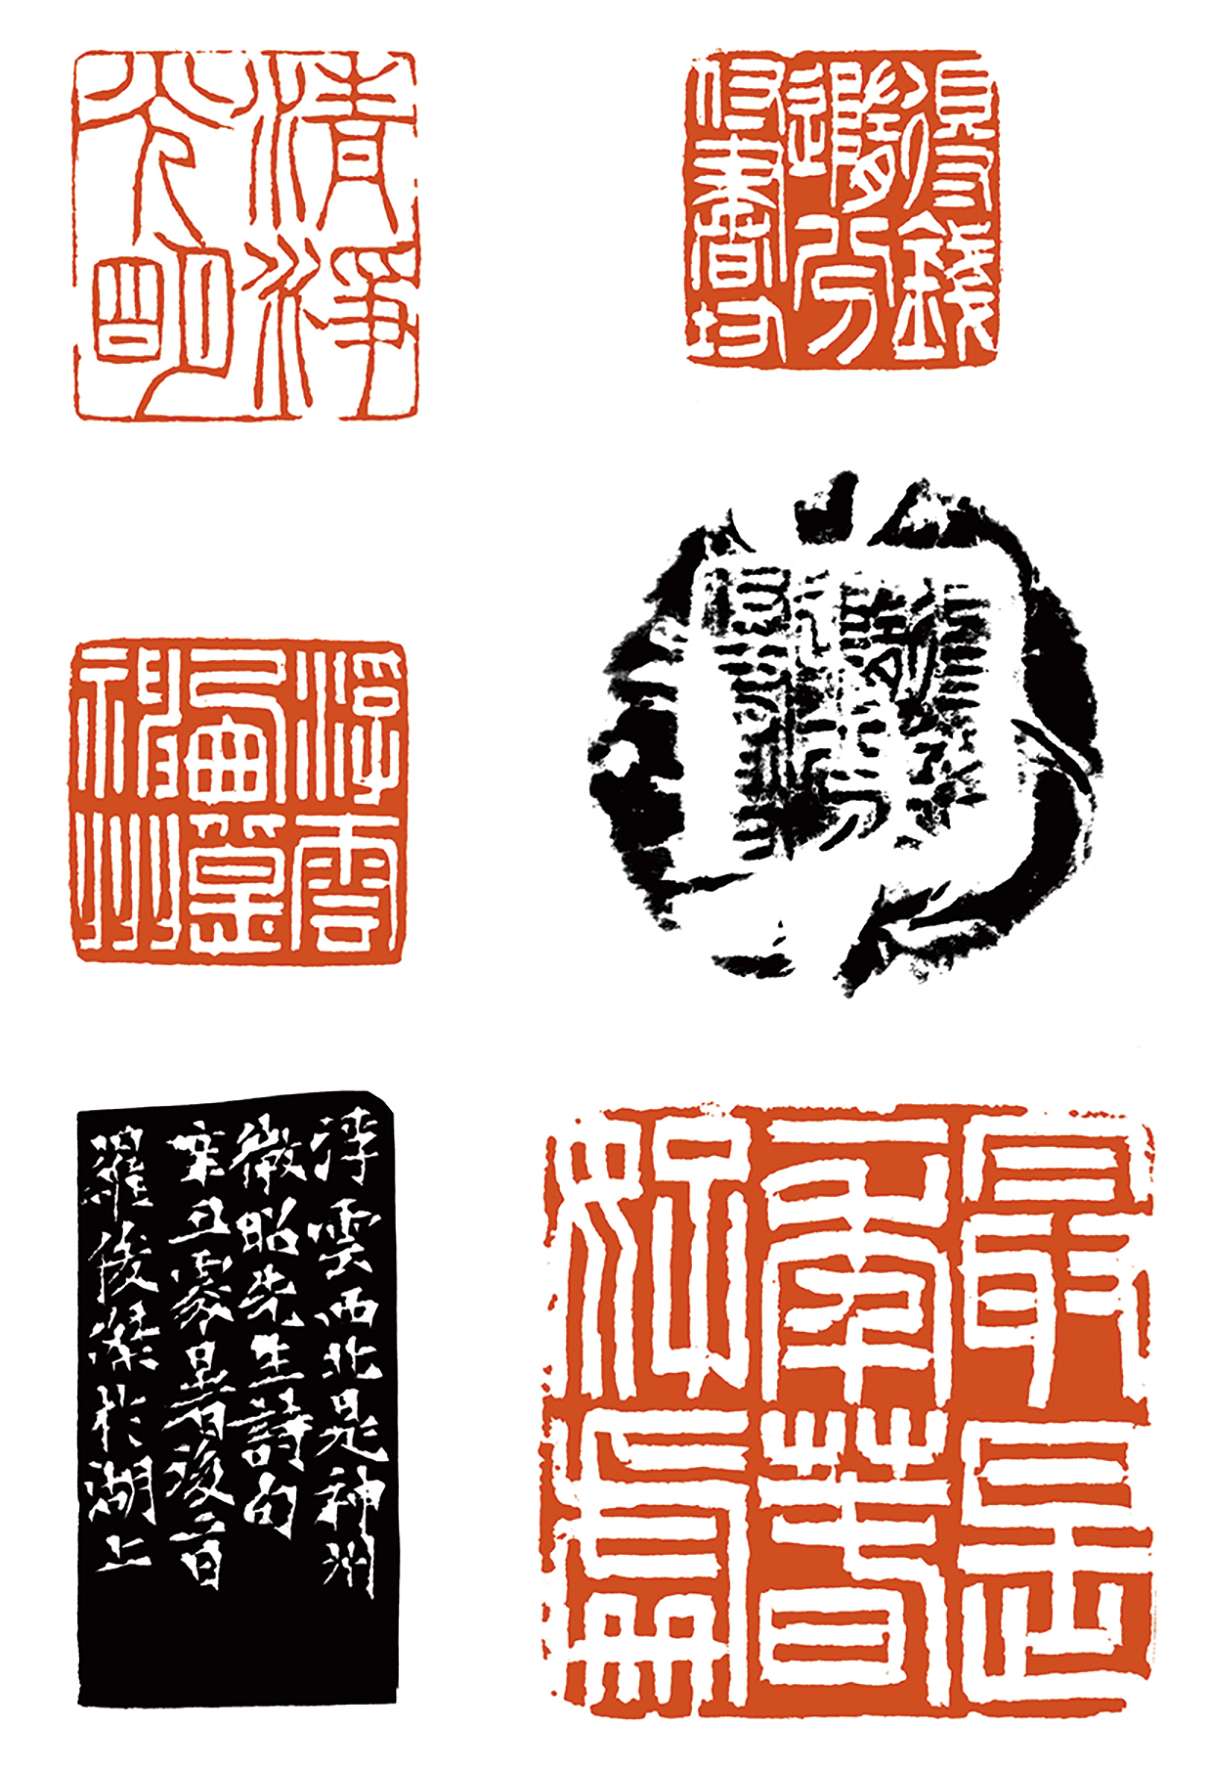  “書學之路——中國高等書法教育成果系列之篆刻專題展”羅俊傑作品